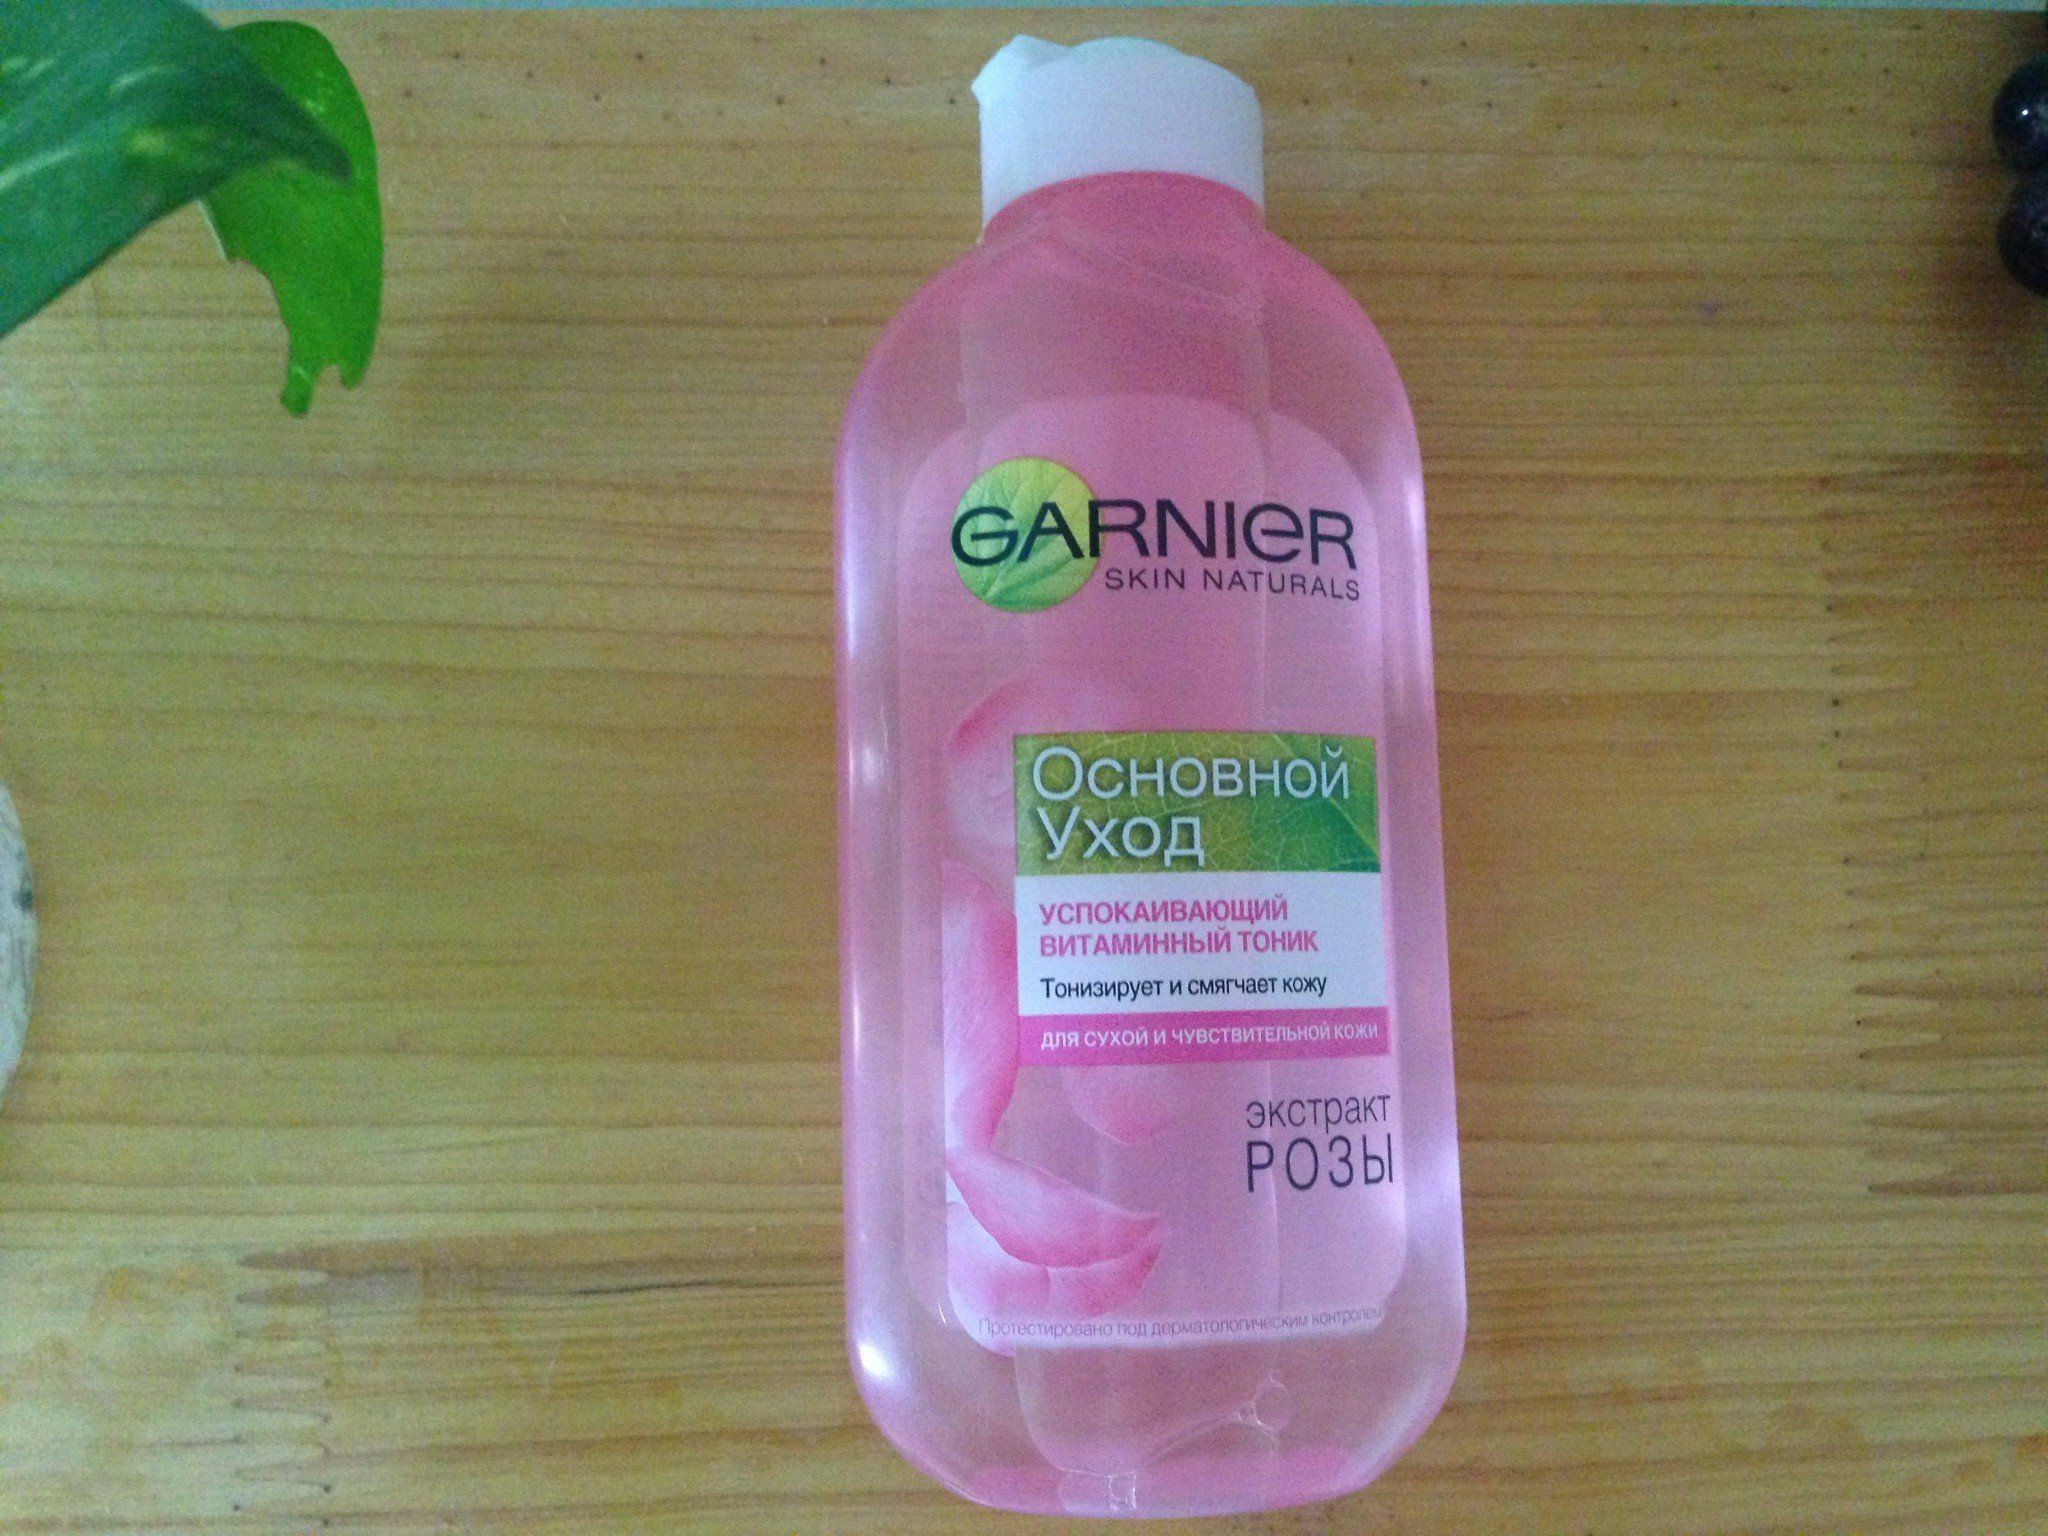 Nước hoa hồng GARNIER dành cho da khô và da nhạy cảm 200 ml - Mỹ phẩm Nga Kennyplatform.com - GV 120